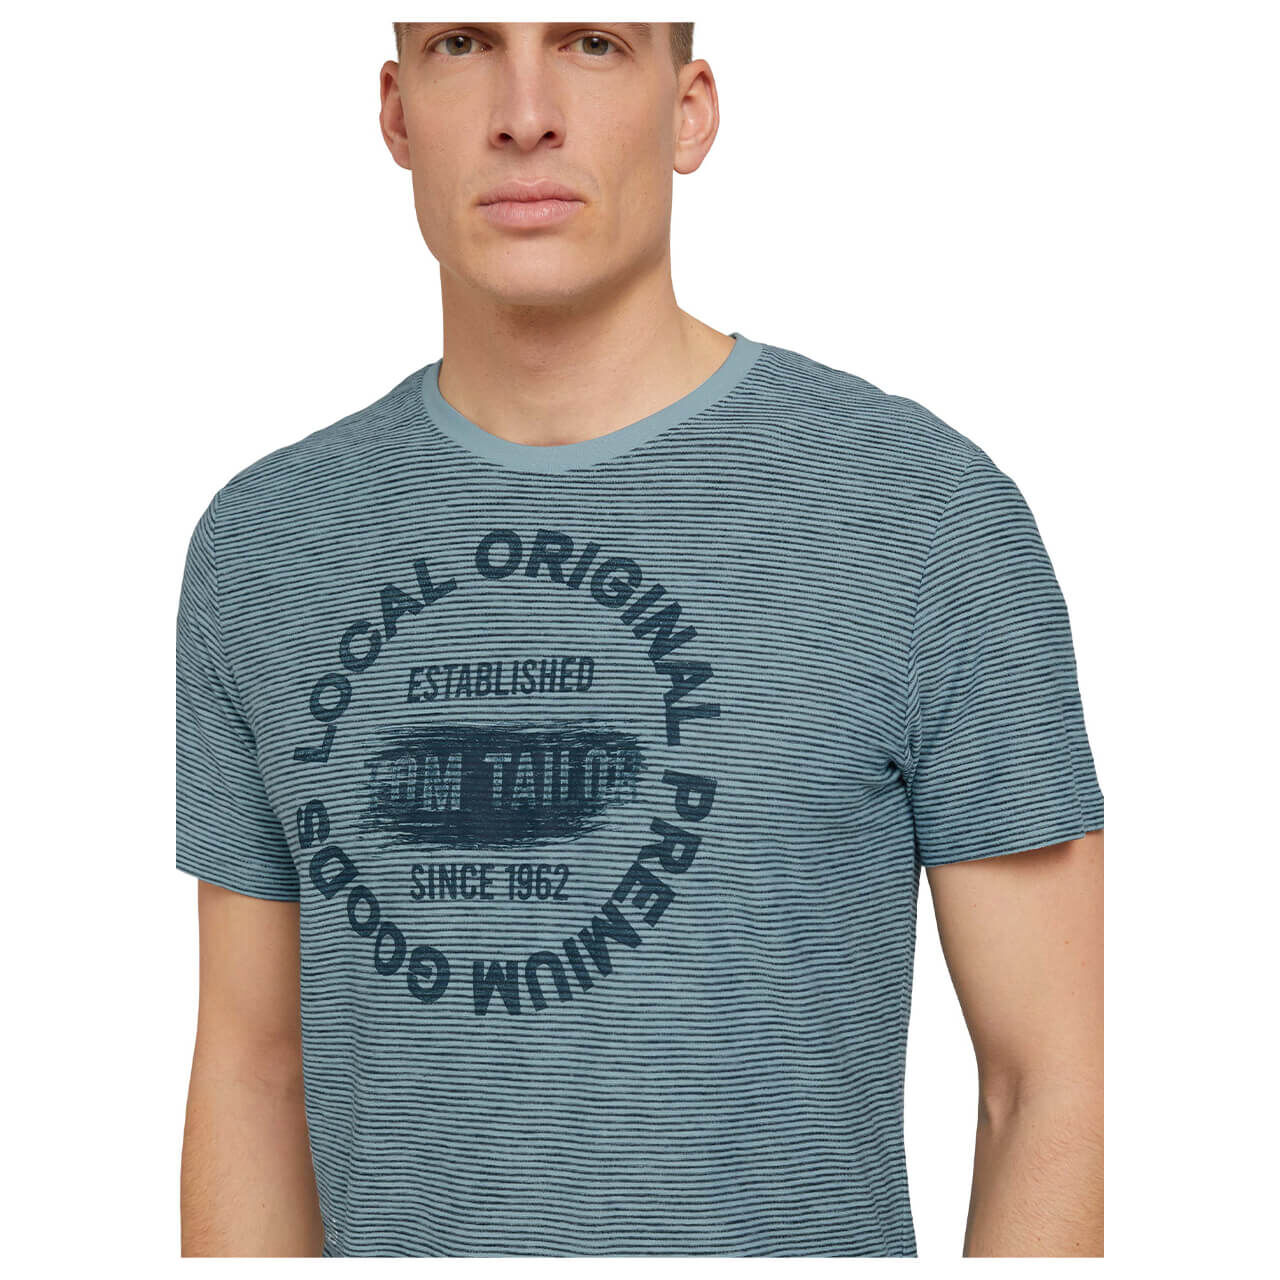 Tom Tailor T-Shirt für Herren in Blau mit Print, FarbNr.: 29167